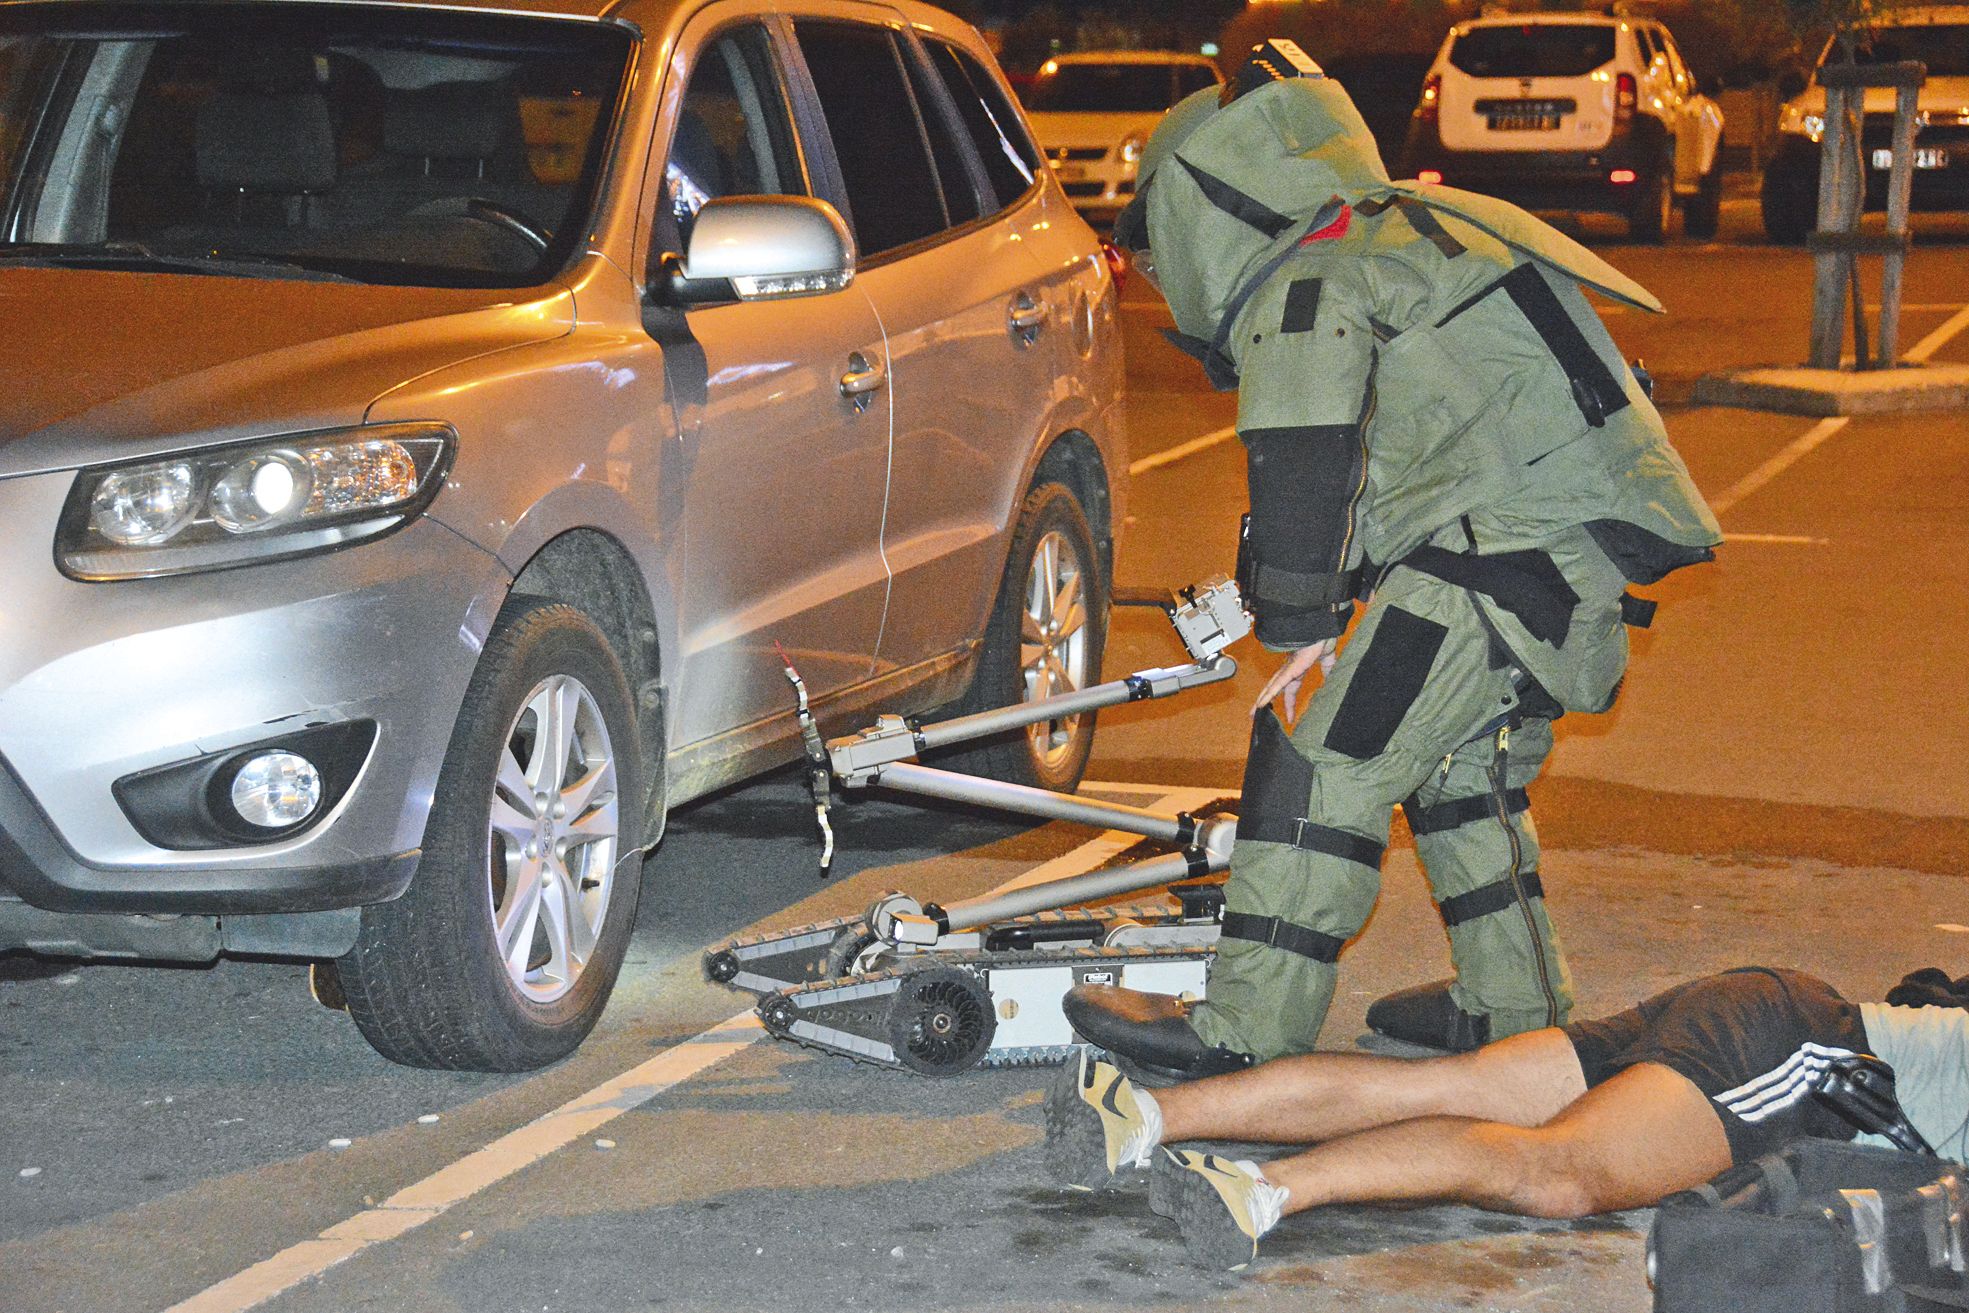 Pour que l’exercice soit complet, un colis potentiellement piégé a été installé sous une voiture à proximité des deux hommes tués par balles.